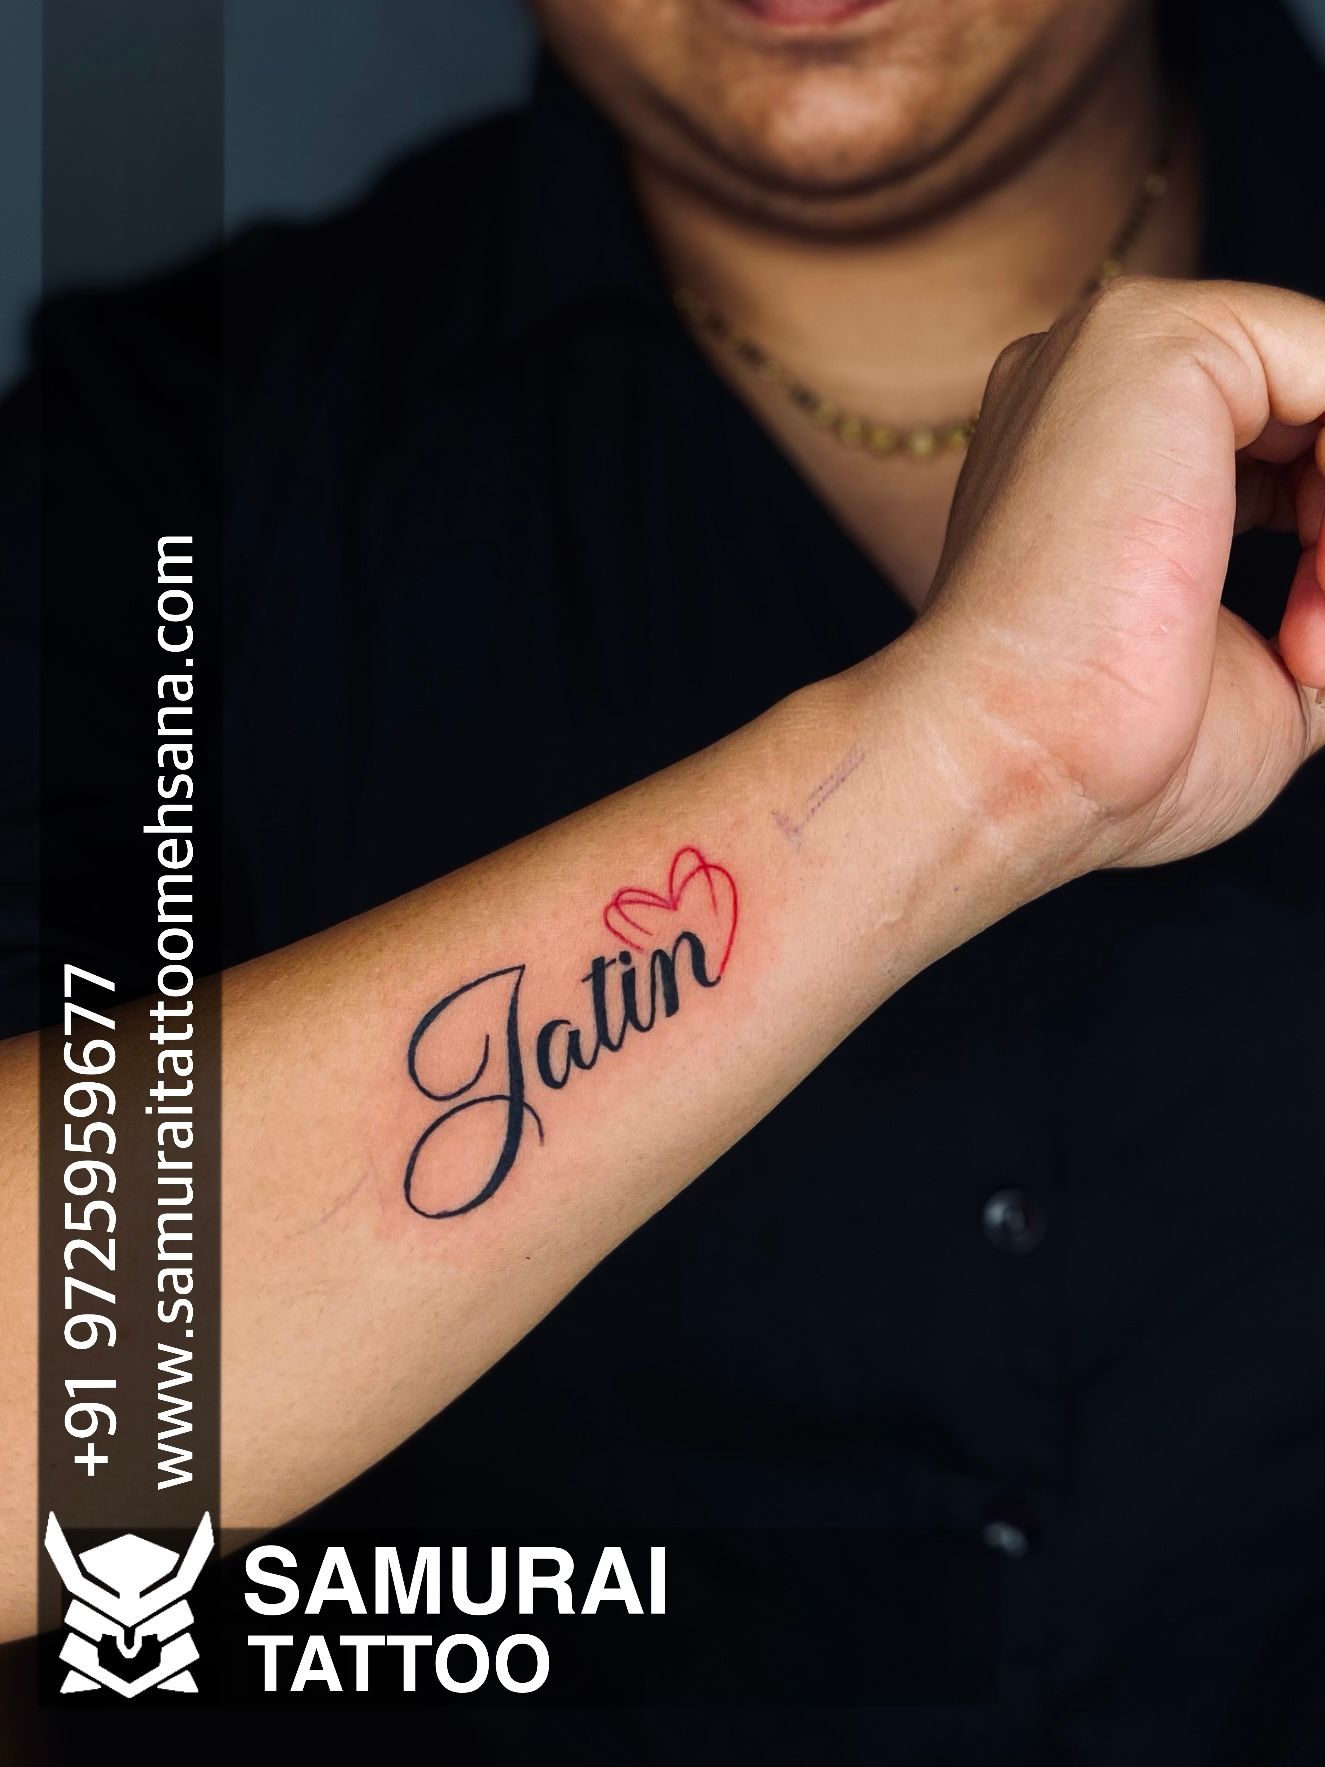 Tattoo uploaded by Vipul Chaudhary • Star tattoo |Star tattoo design |Star  tattoos |Star tattoo ideas • Tattoodo